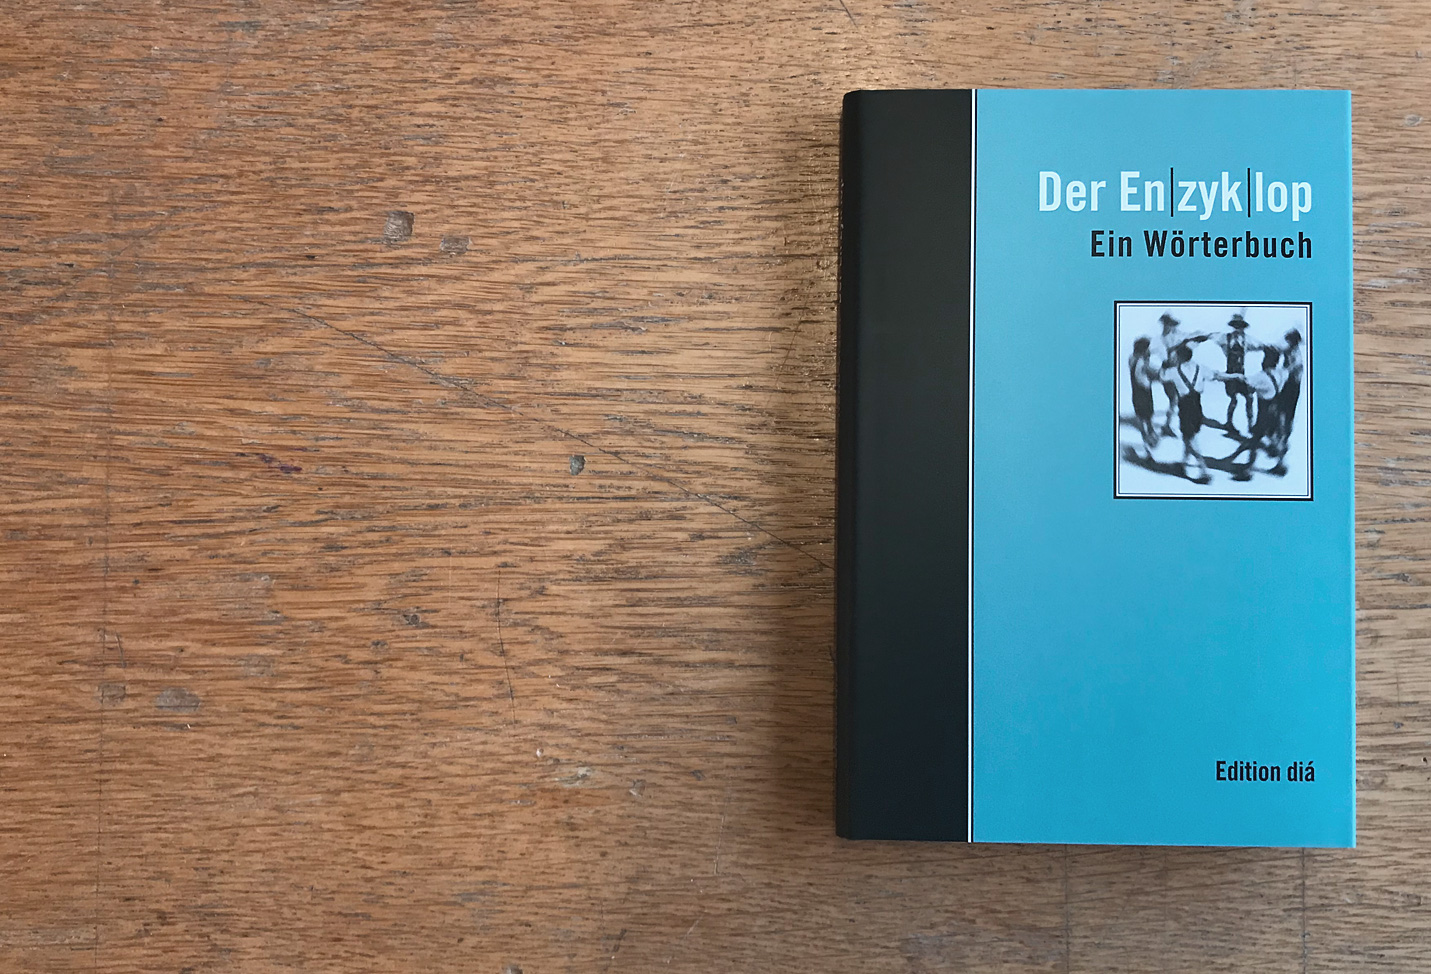 Der Enzyklop. Ein Wörterbuch – René Gisler - Edition dia – 2001 – Berlin